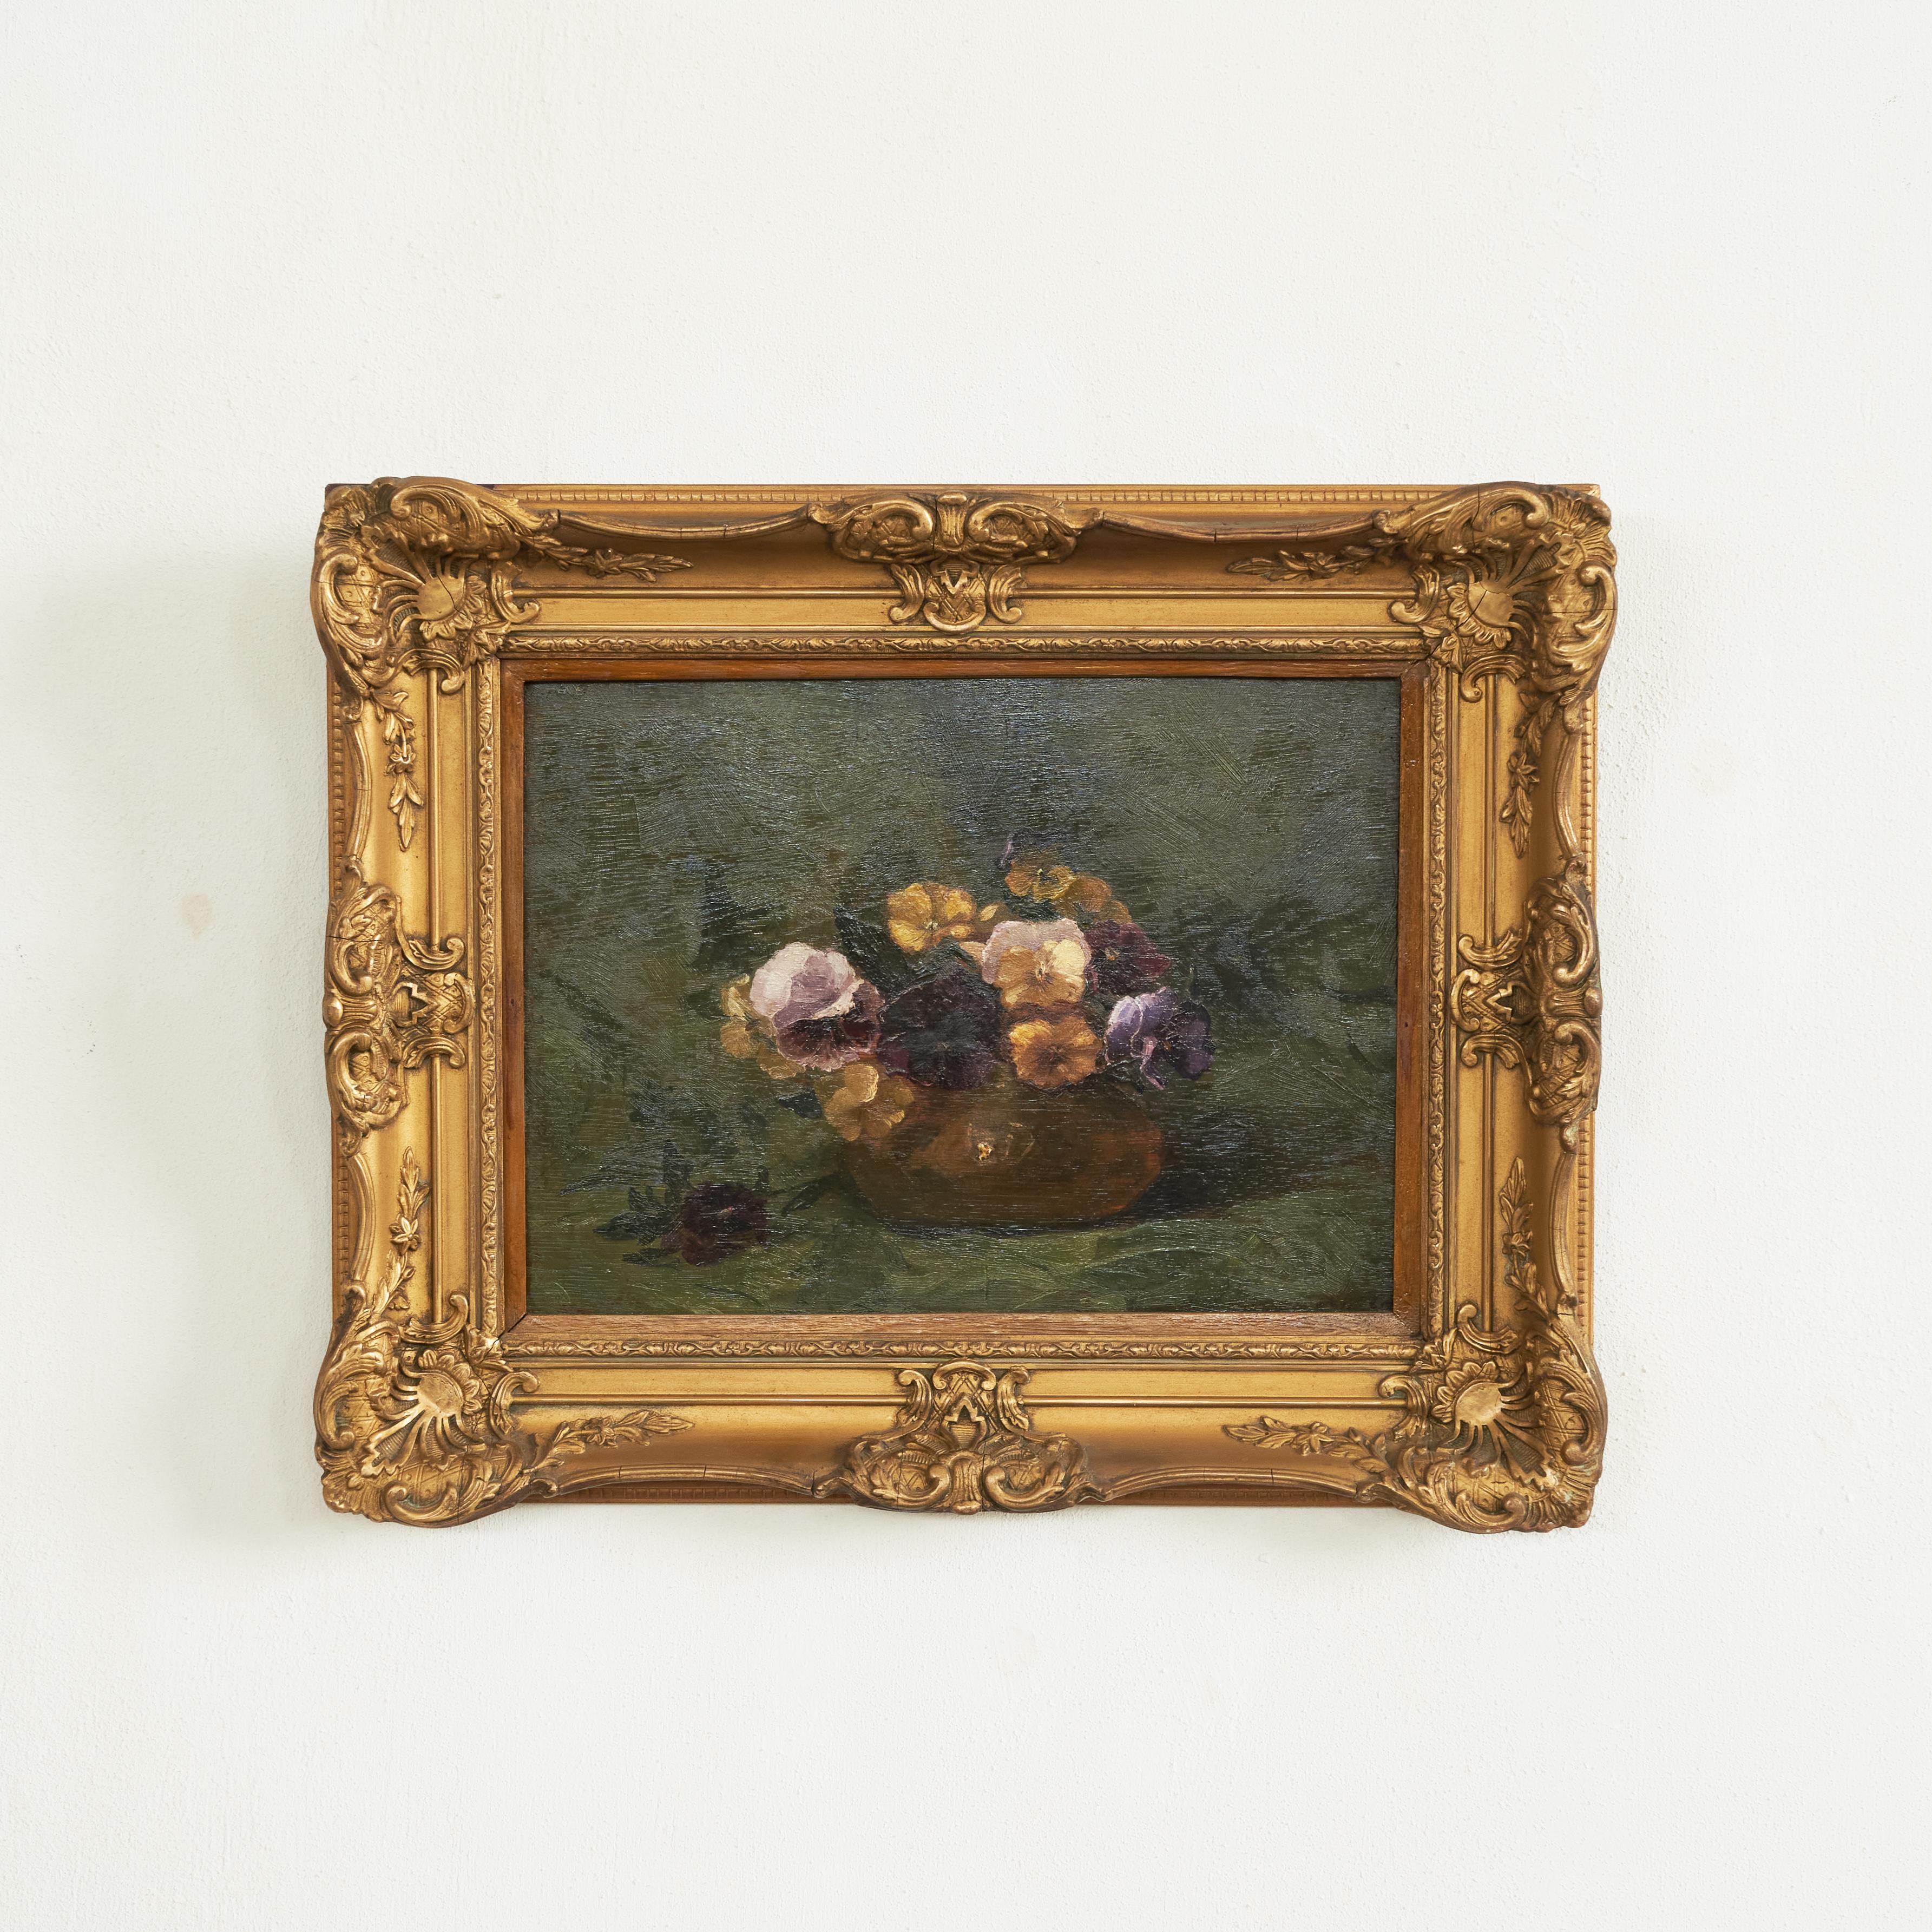 Stillleben mit Veilchen Öl auf Platte in verziertem vergoldetem Rahmen, 1880er Jahre.

Dieses wunderbare Ölgemälde zeigt einen Strauß violetter Blumen, die vor einem dunklen Hintergrund wunderschön angeordnet sind. Schöne kräftige und doch zarte